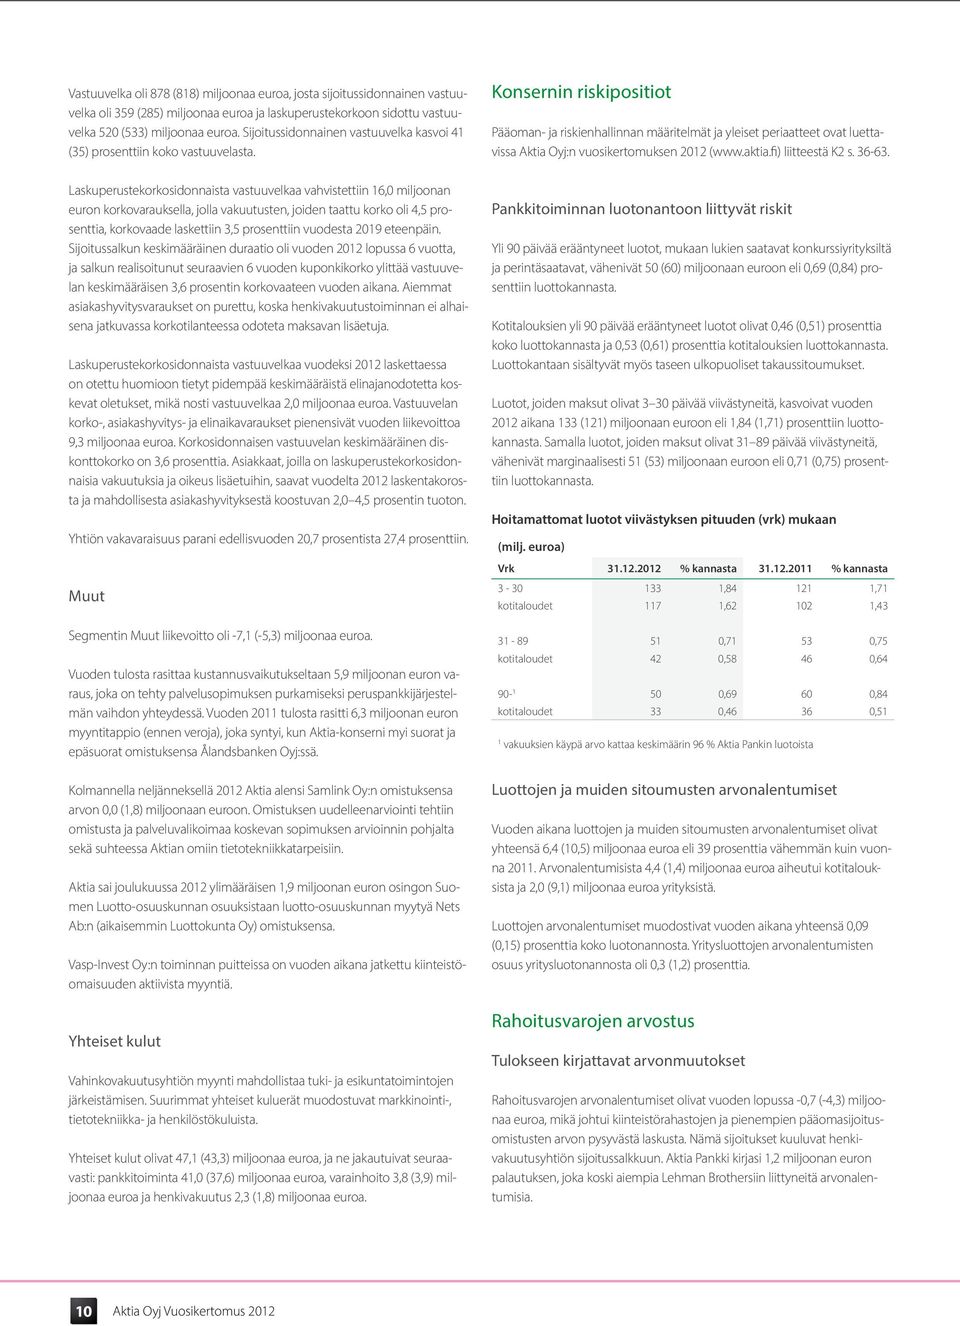 Konsernin riskipositiot Pääoman- ja riskienhallinnan määritelmät ja yleiset periaatteet ovat luettavissa Aktia Oyj:n vuosikertomuksen 2012 (www.aktia.fi) liitteestä K2 s. 36-63.